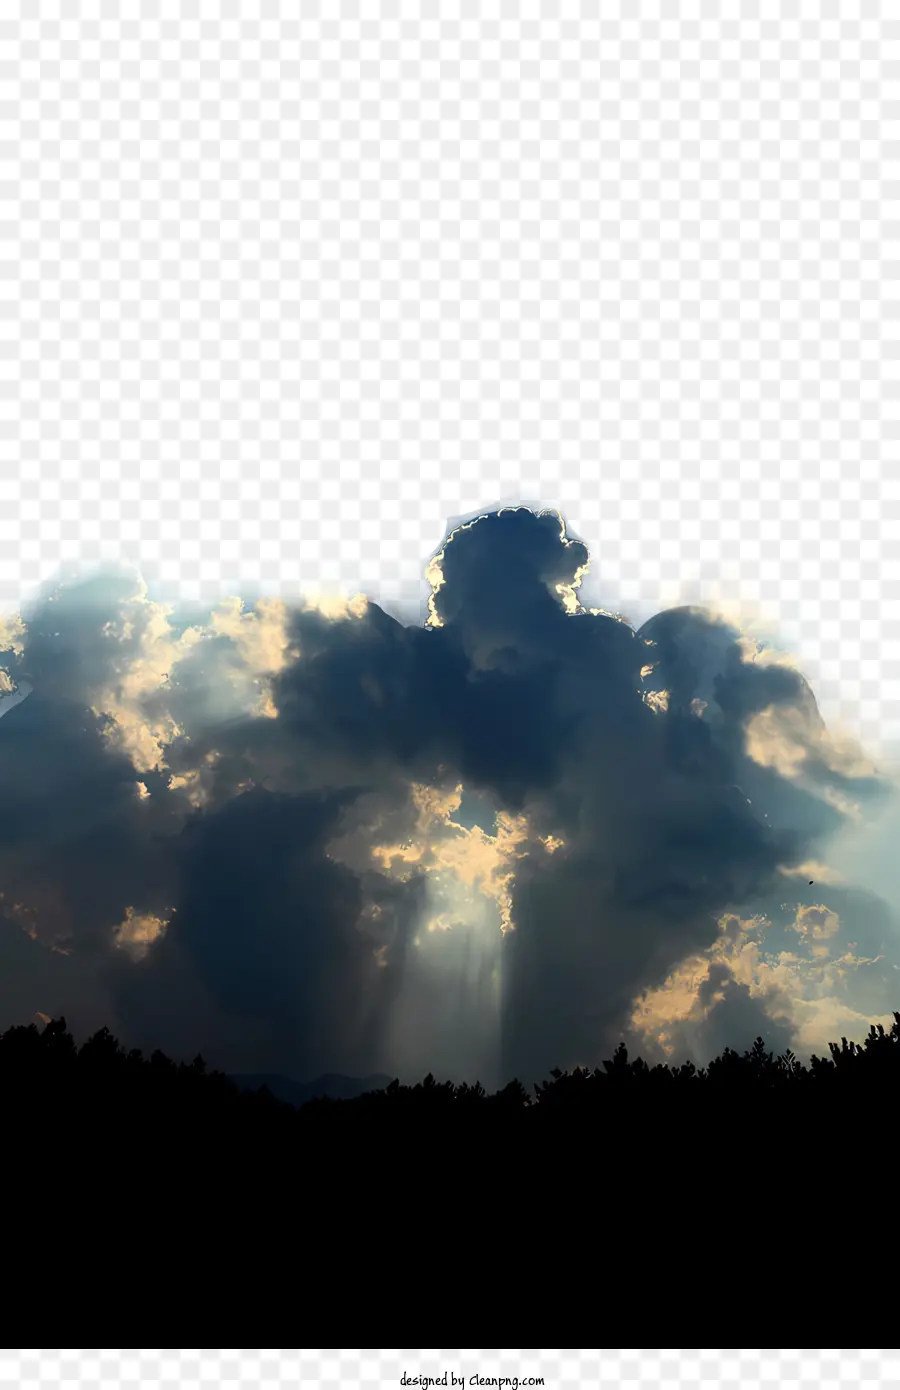 SCHEDA SCELLA CLUBLY SULLAGGI SUNSHINE ombre - Cielo nuvoloso con raggi di luce solare e ombre